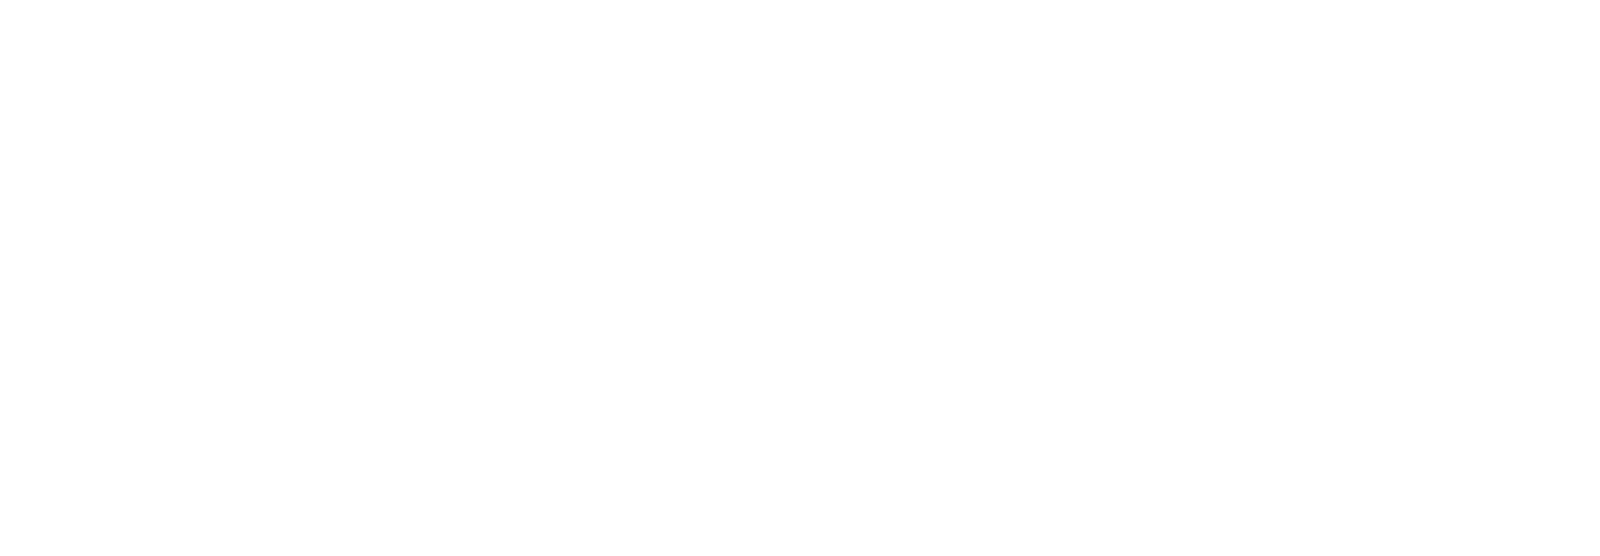 SriCity Nature Society